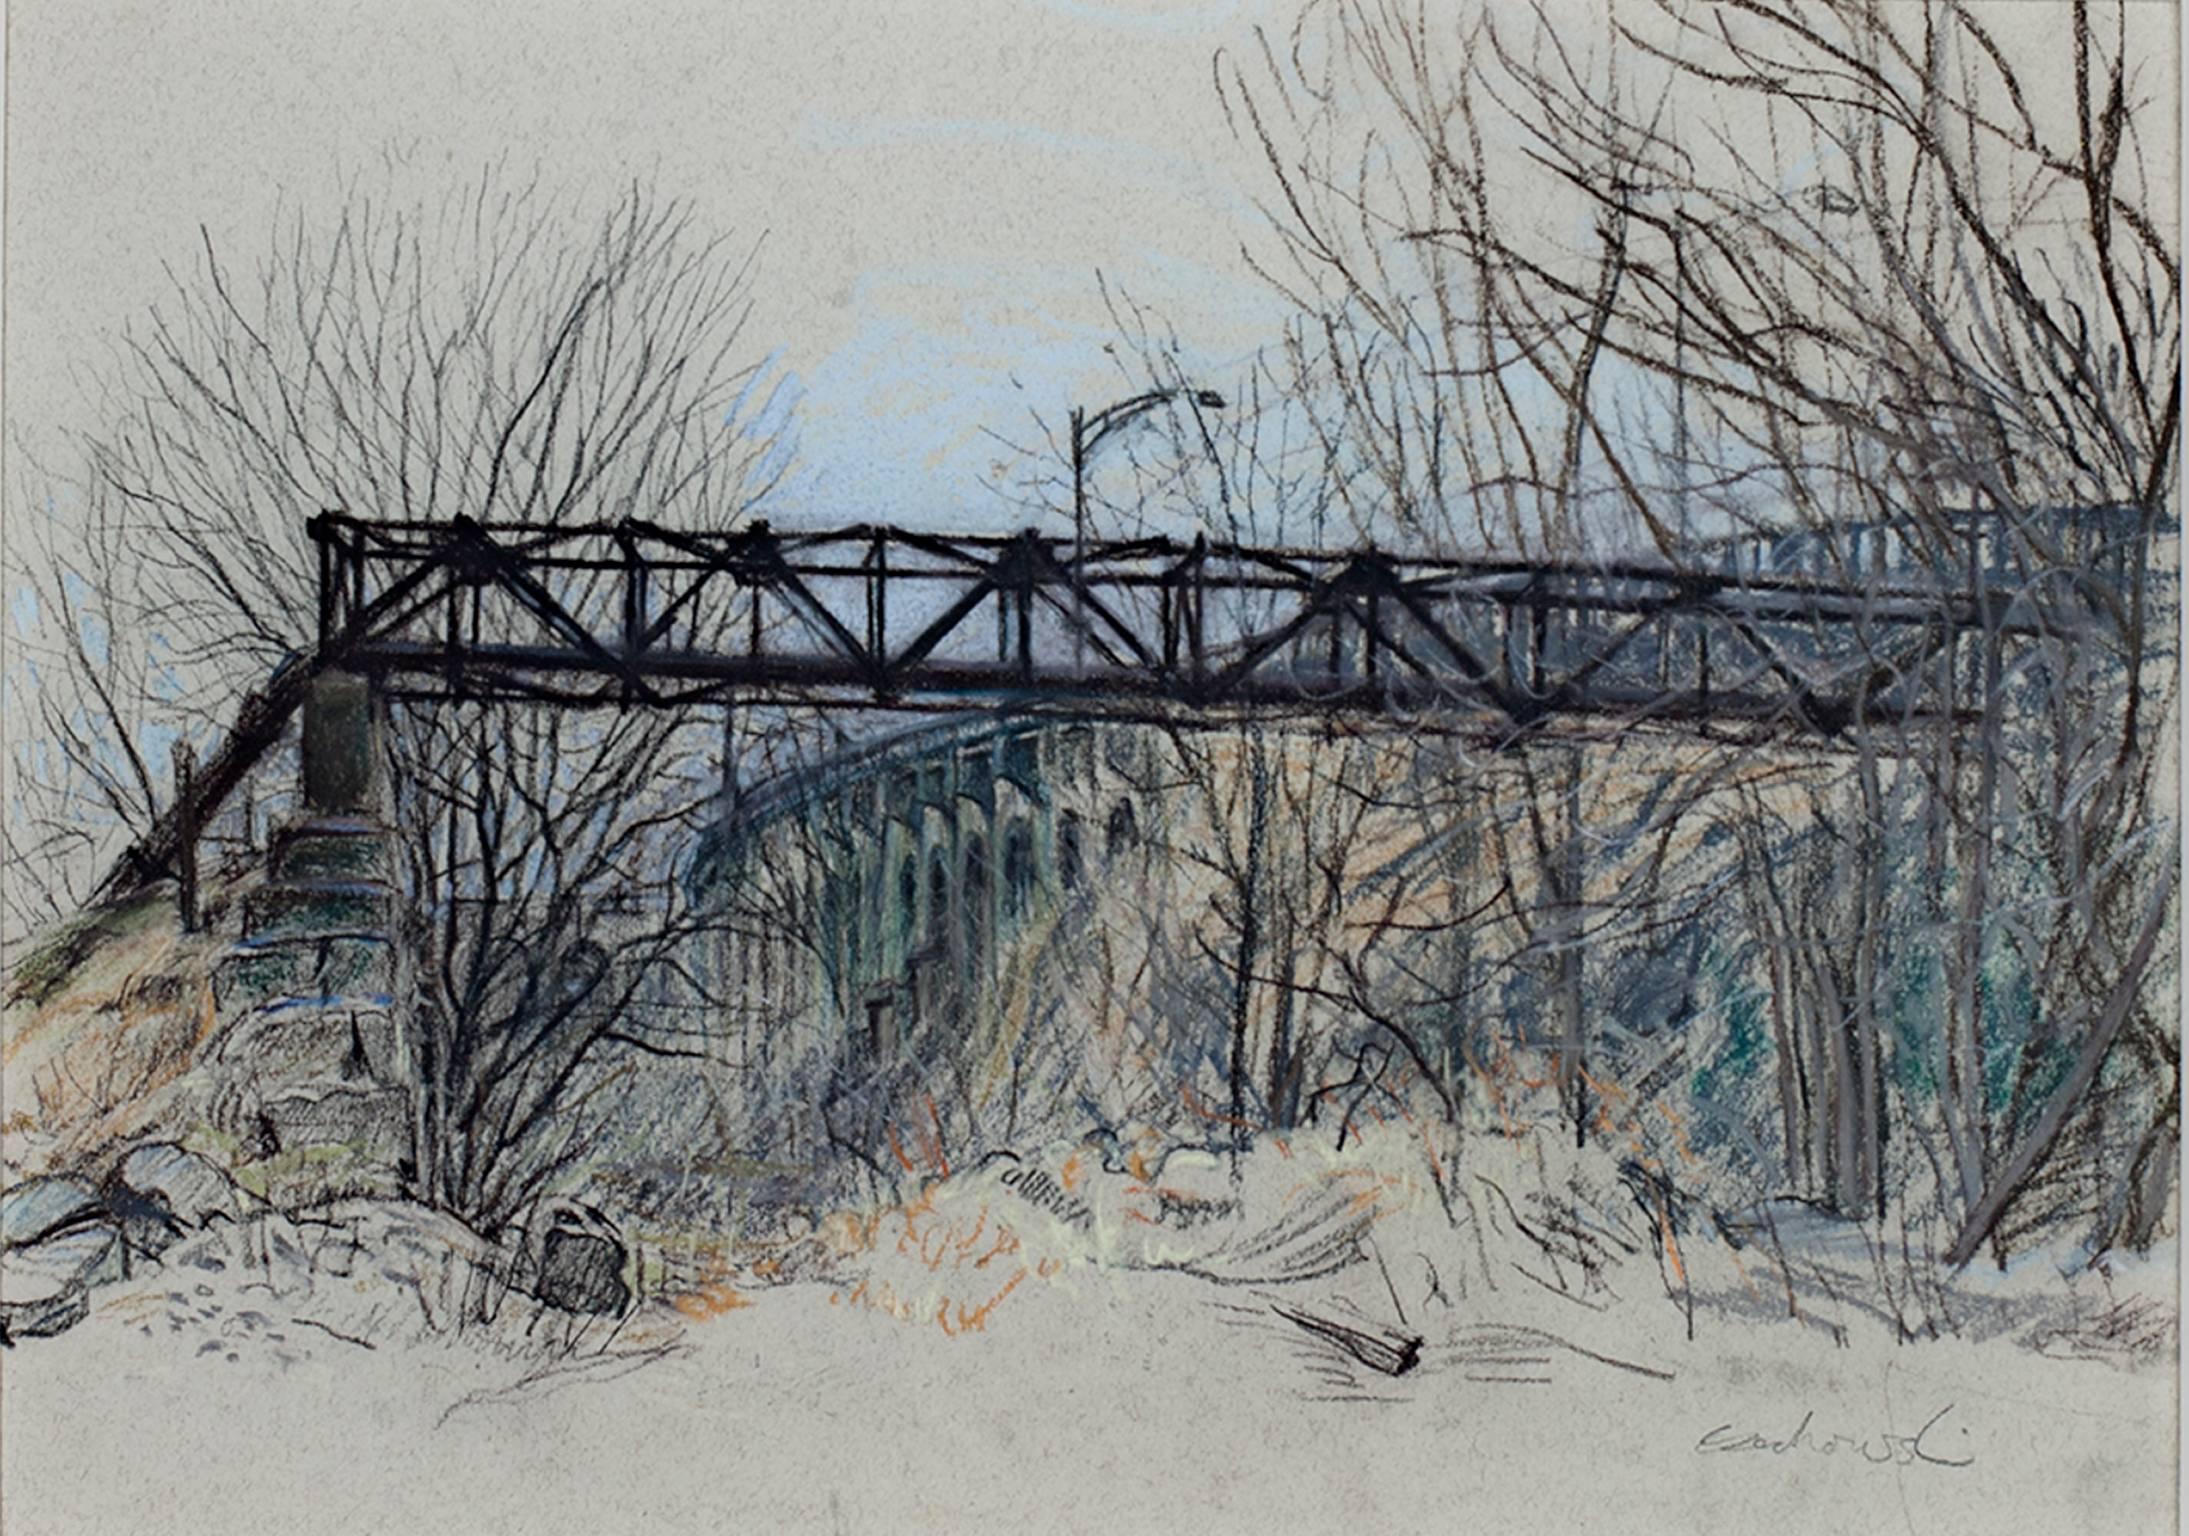 "Run-off Pipe, Million Dollar Bridge" est un dessin original au pastel et au crayon réalisé par Alicia Czechowski. L'artiste a signé l'œuvre en bas à droite. Cette œuvre d'art représente une conduite d'eau dans un échafaudage noir se détachant d'un